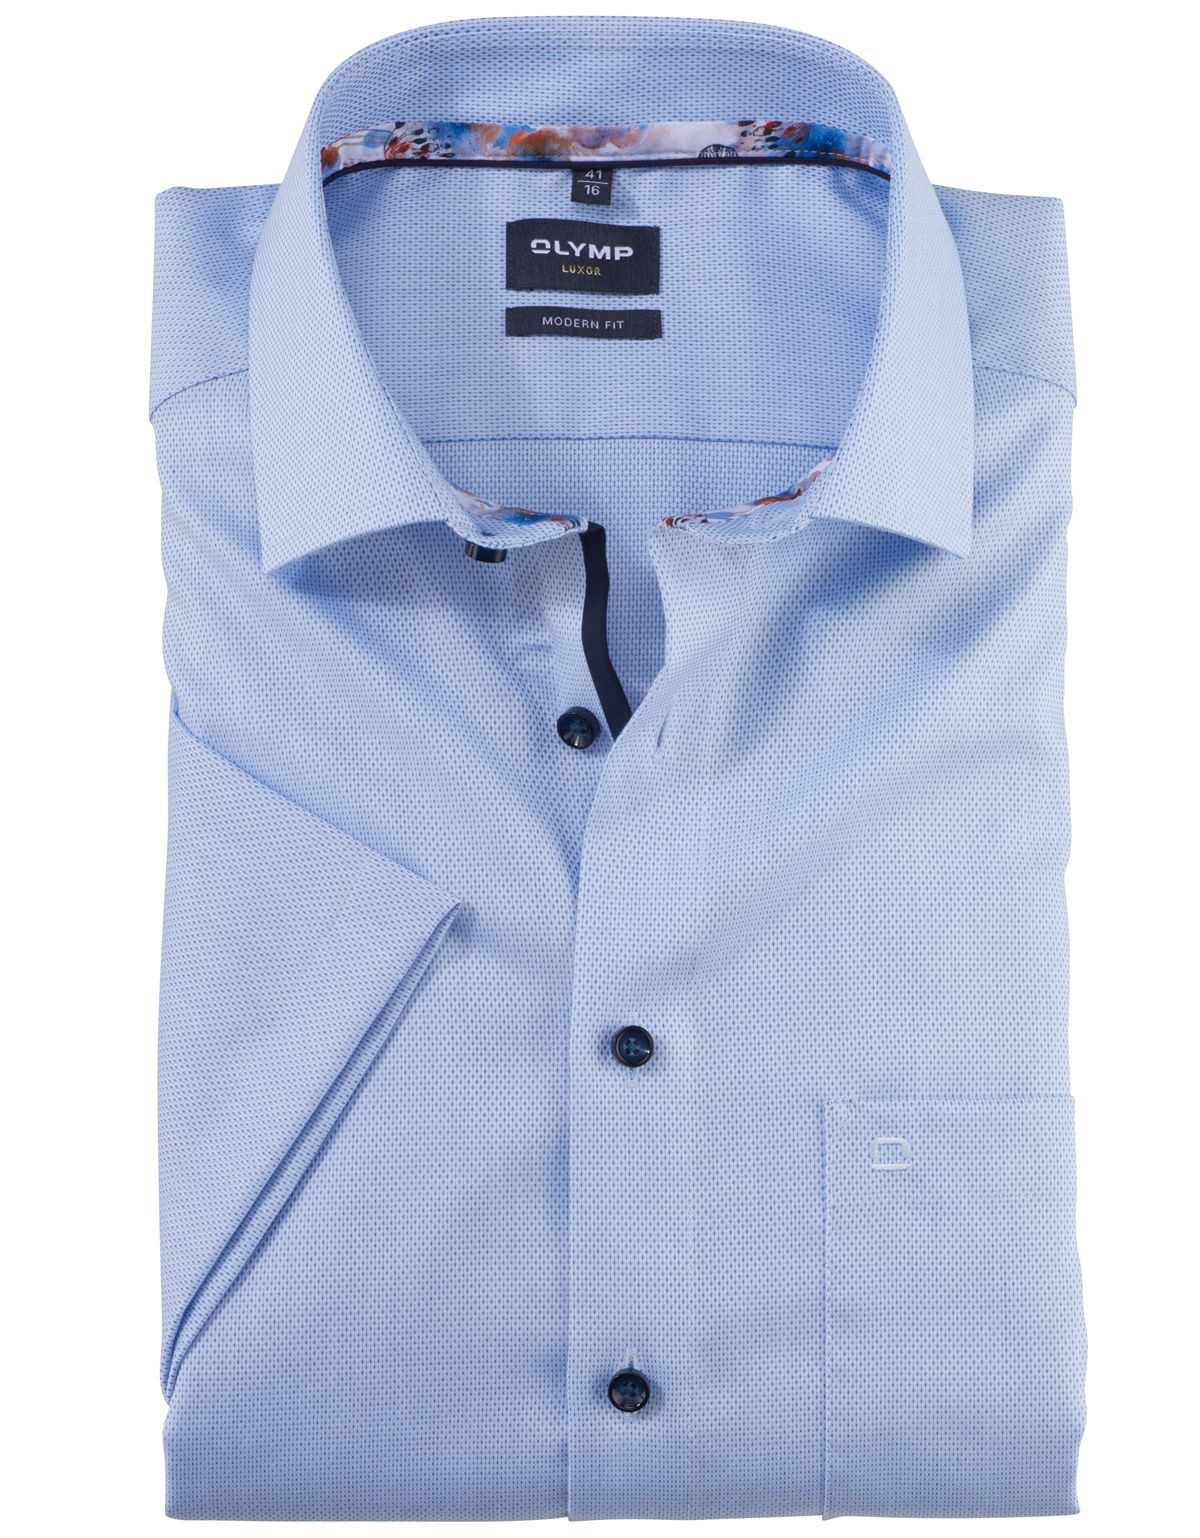 Рубашка мужская OLYMP Luxor, modern fit, фактурная[Голубой]